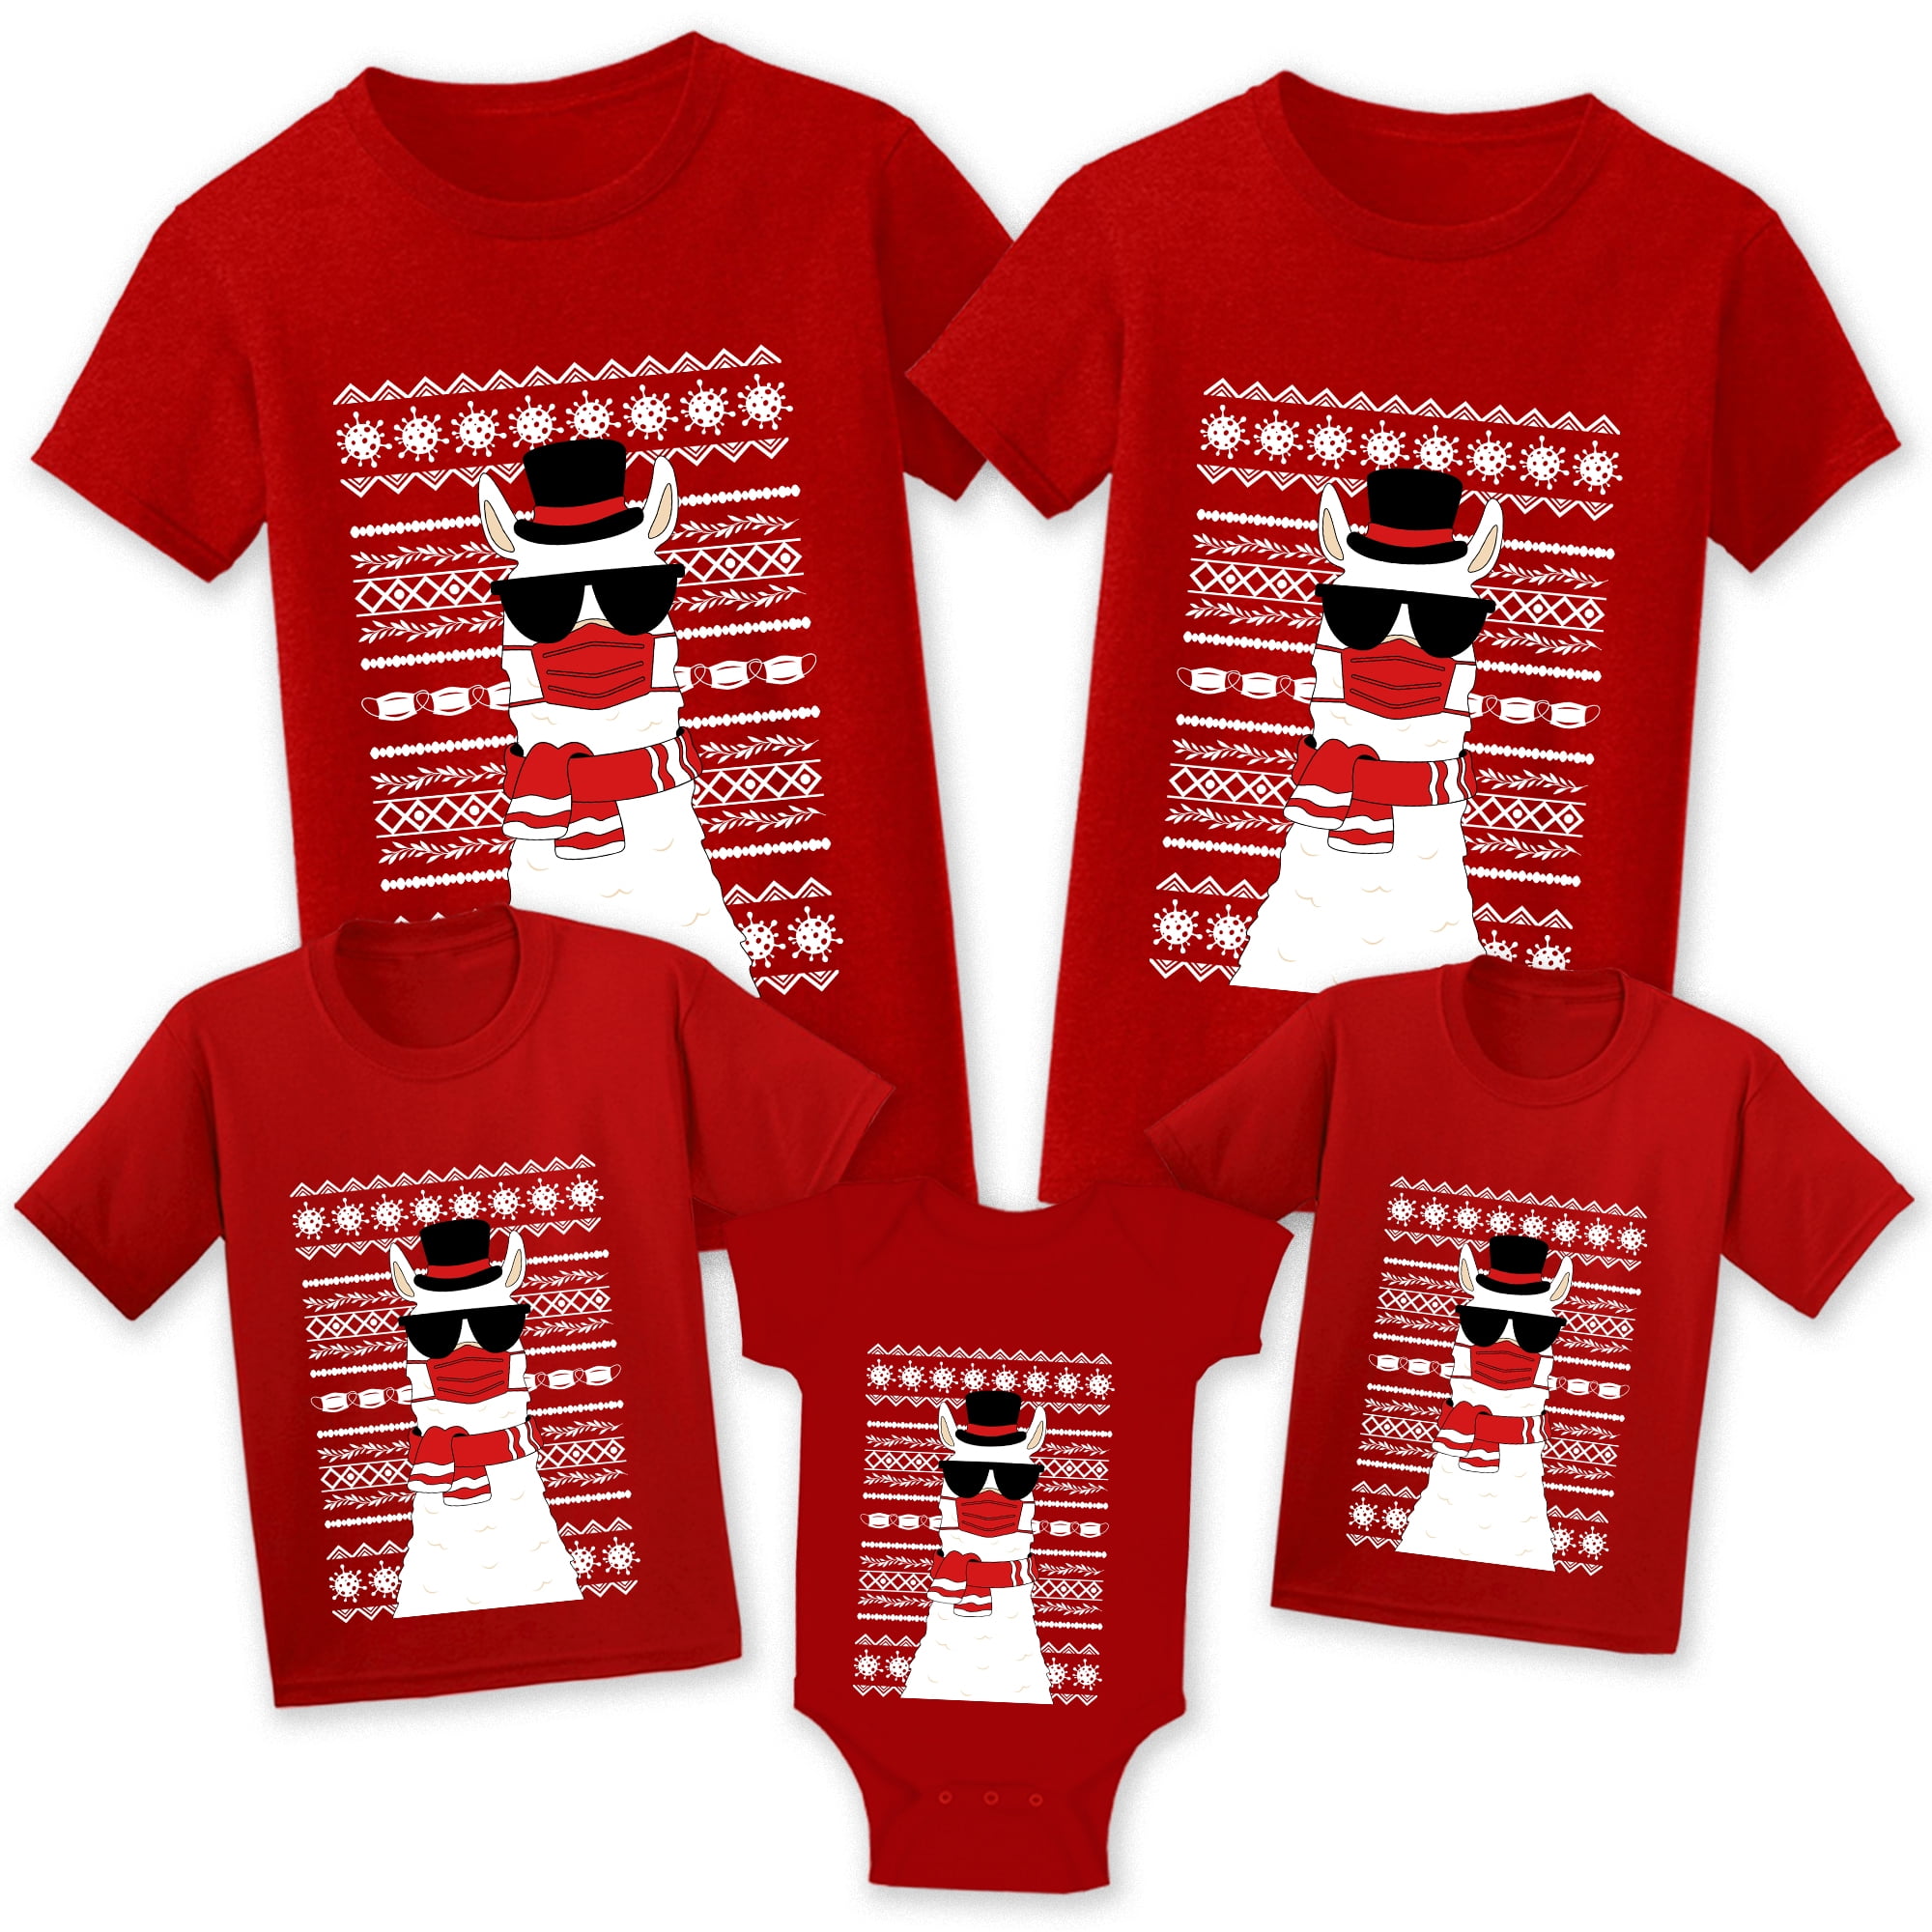 Christmas Family Shirt Holiday Shirt. Christmas Matching Shirt Merry Christmas Shirt Christmas Gift Shirt